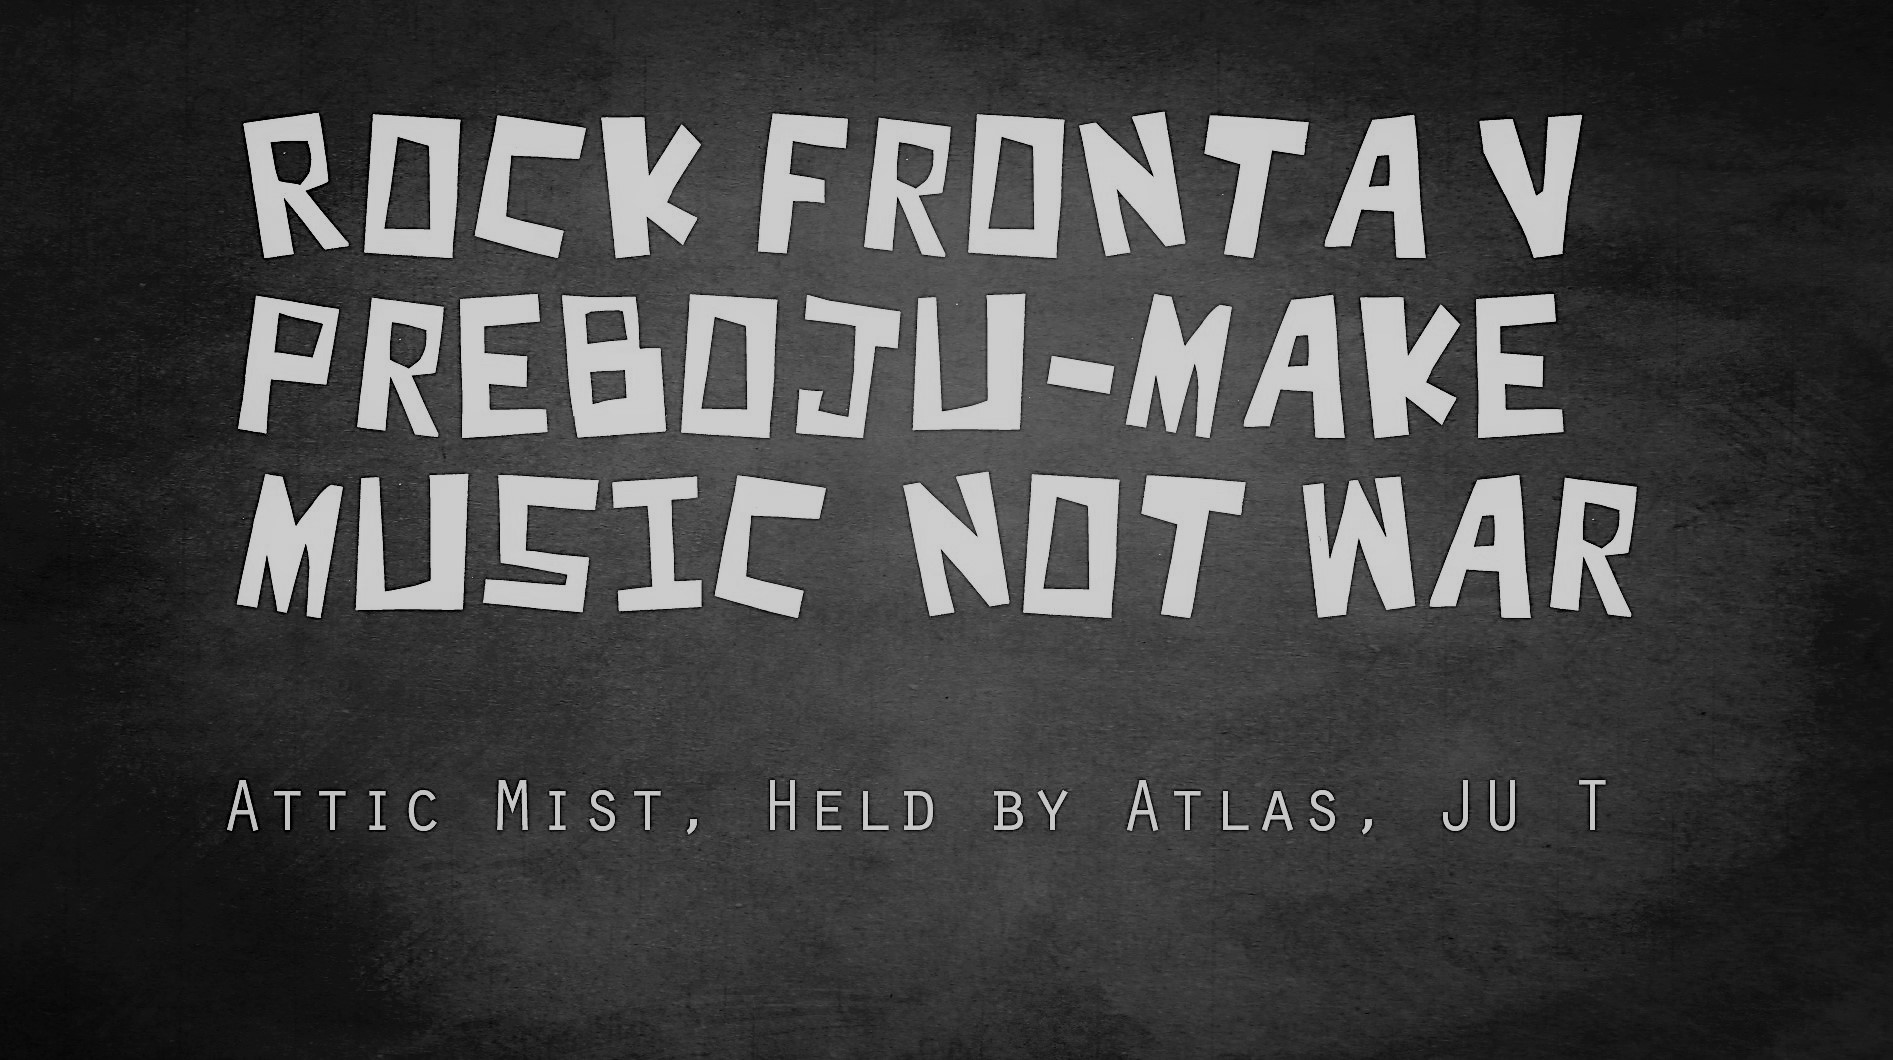 Rock fronta v preboju/make music-not war: Attic Mist, Held by Atlas,  JU T